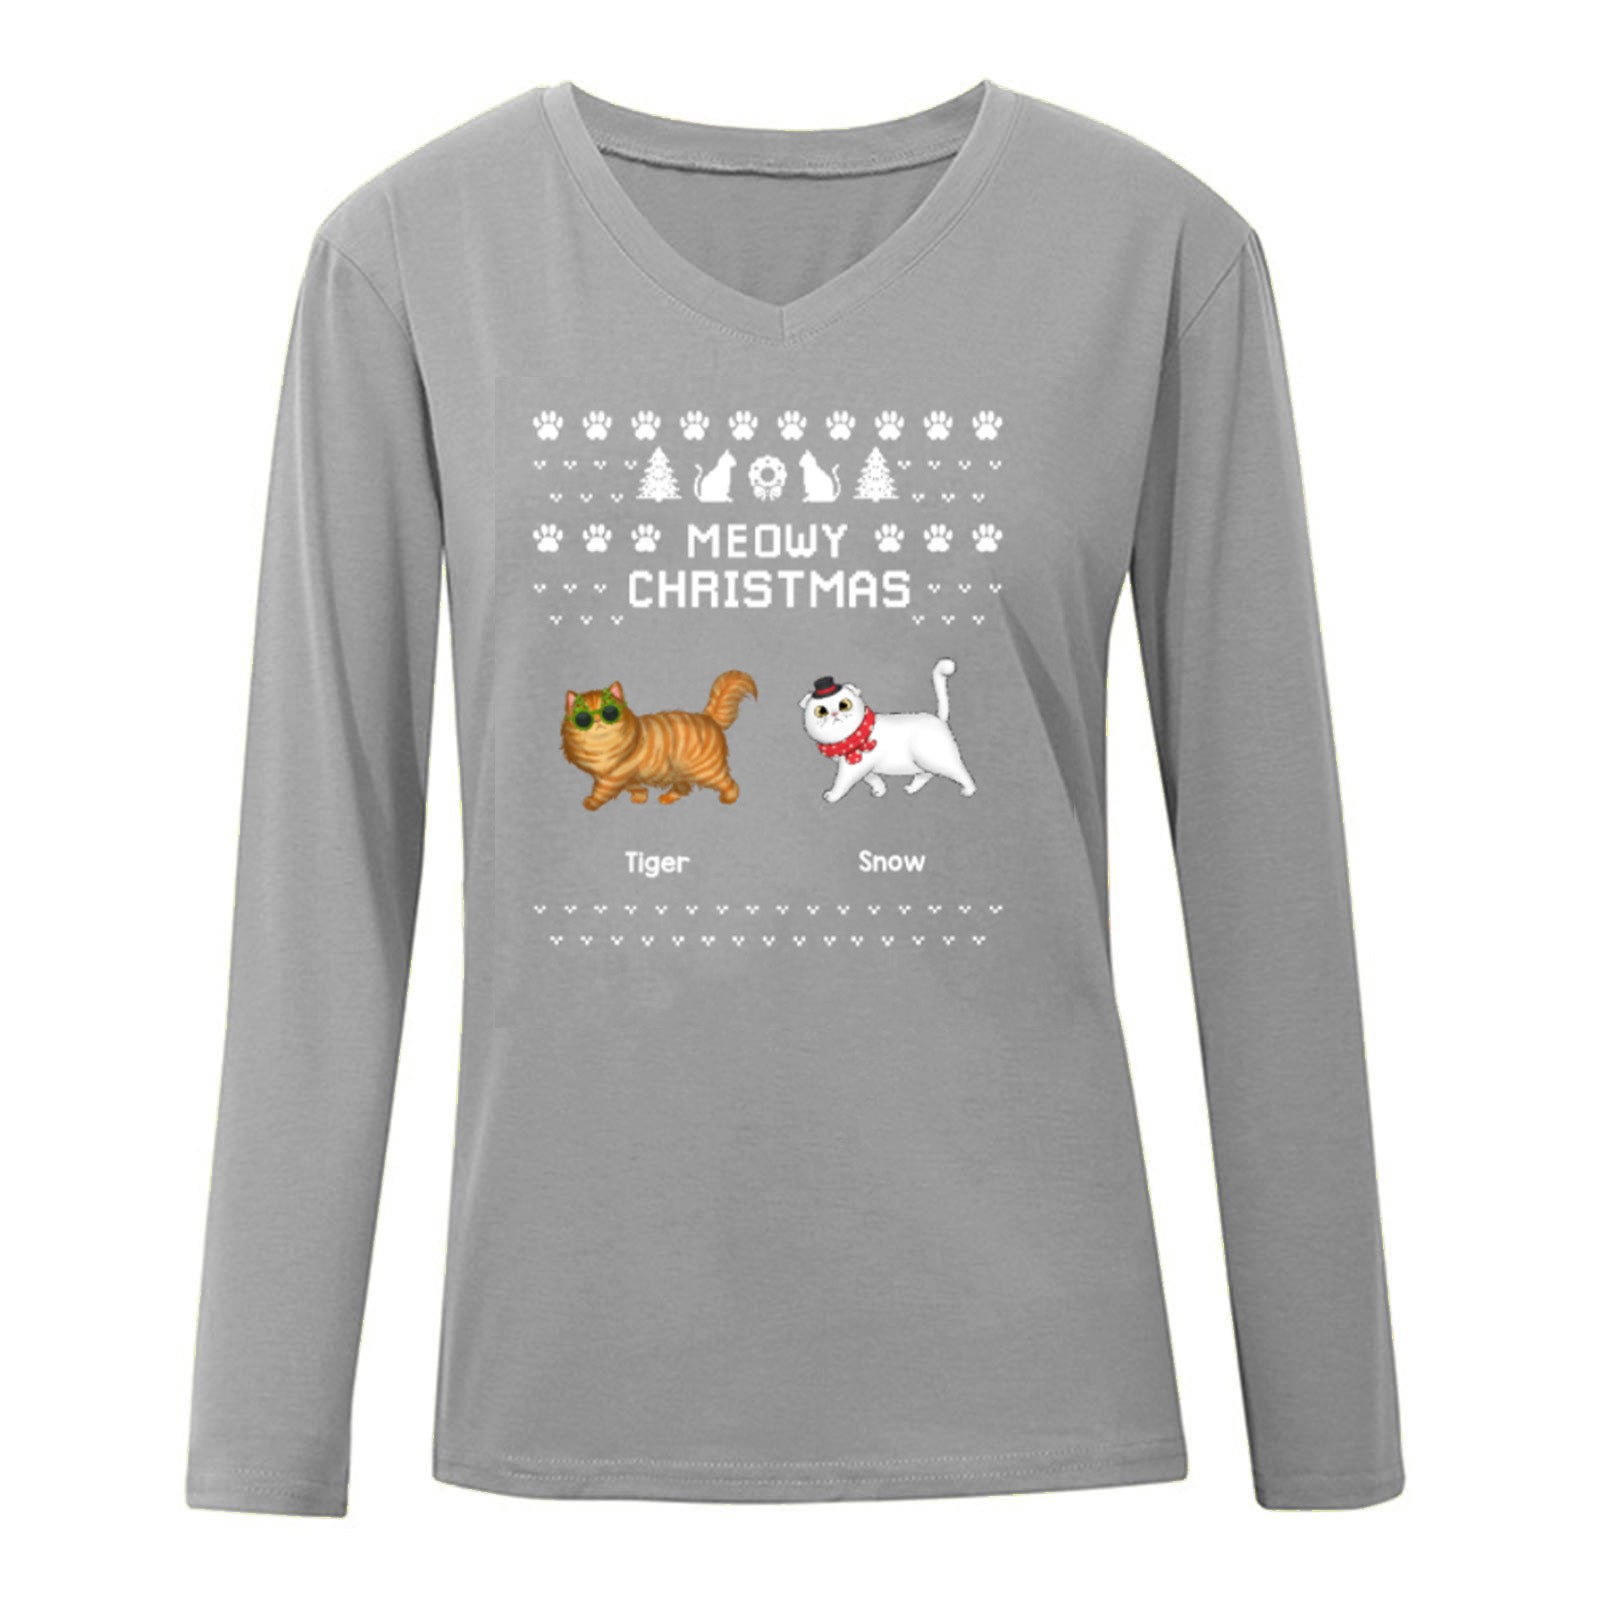 ふわふわ猫ウォーキング ニャーウィー クリスマス アグリー セーター パターン パーソナライズされた長袖シャツ